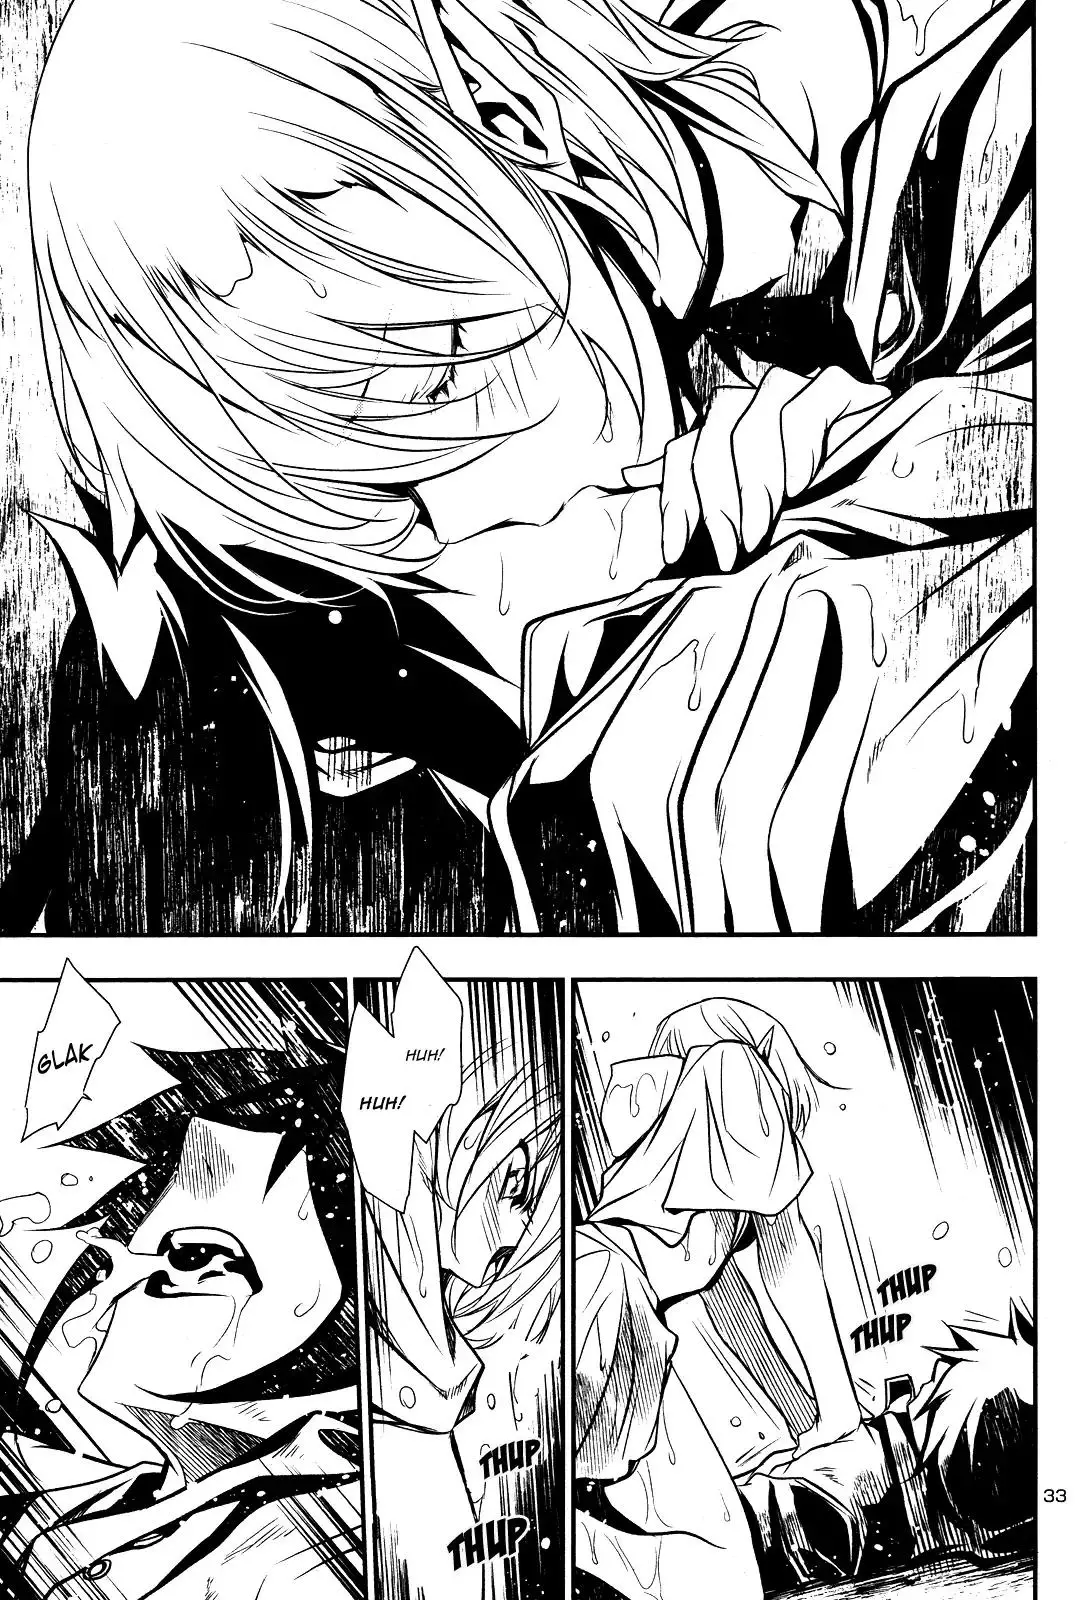 Shinju no Nectar - 16 page 31